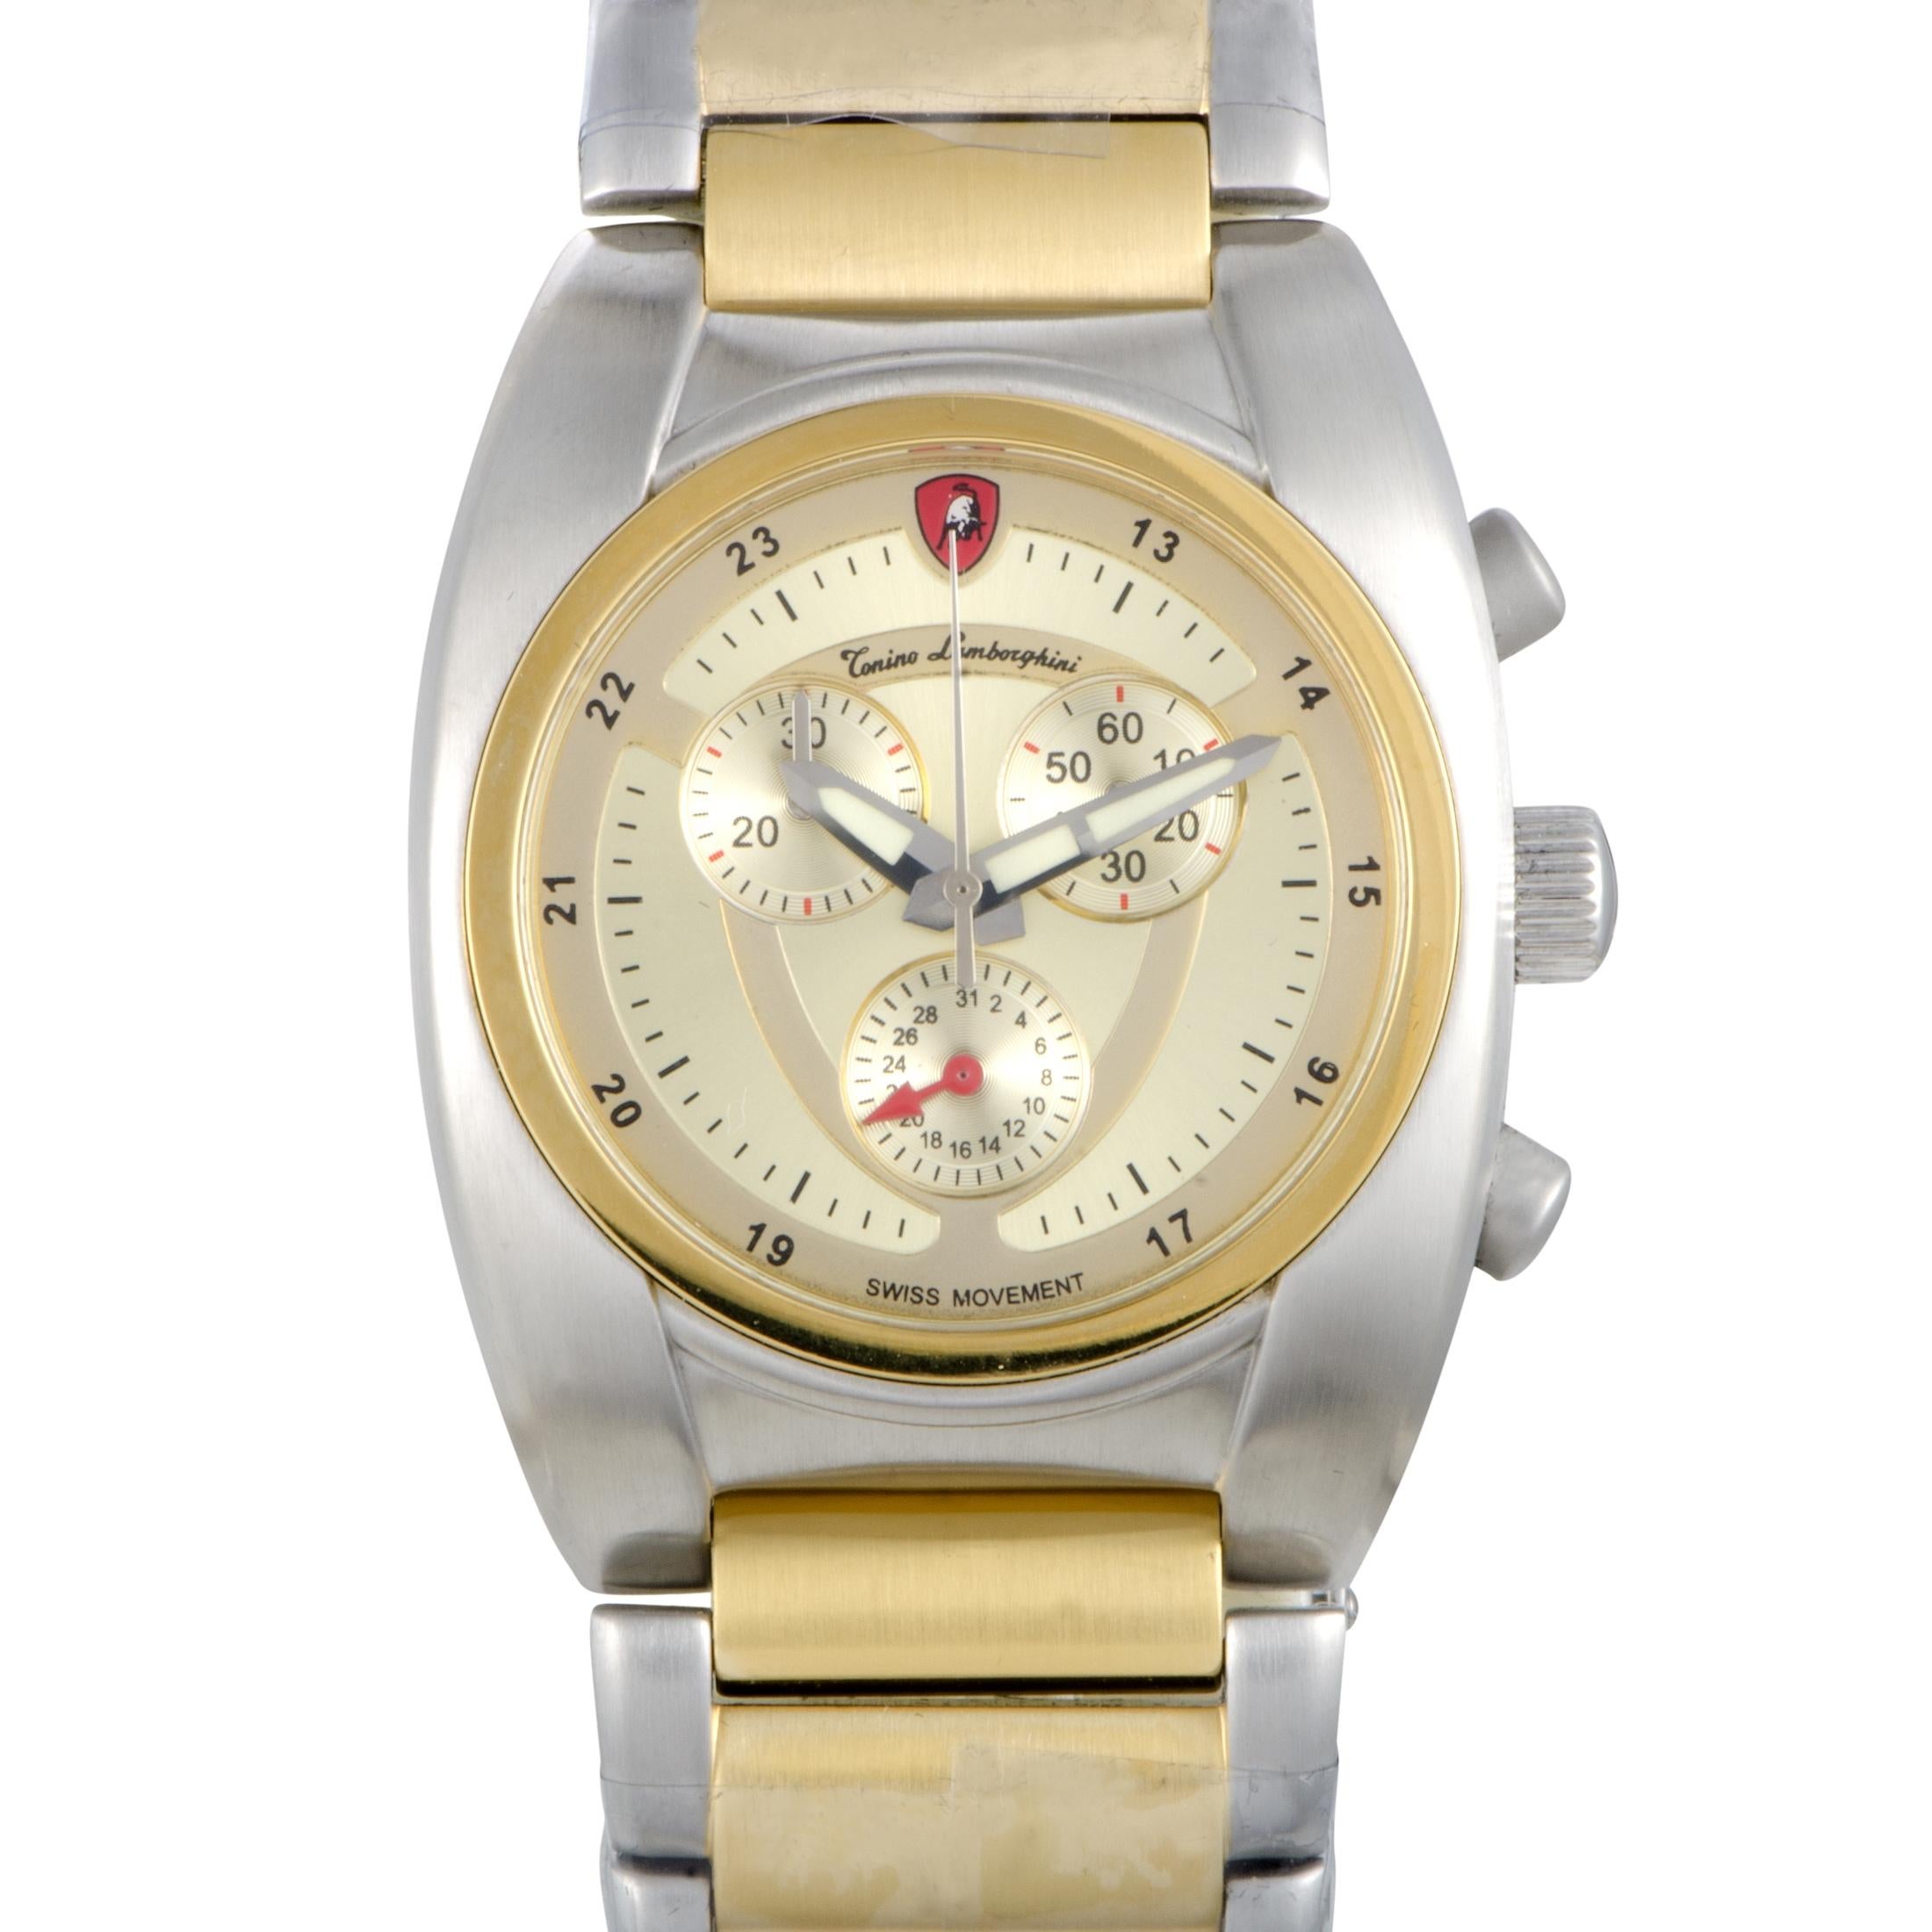 Tonino Lamborghini EN Models Men's Quartz Chronograph Watch EN038.306 1